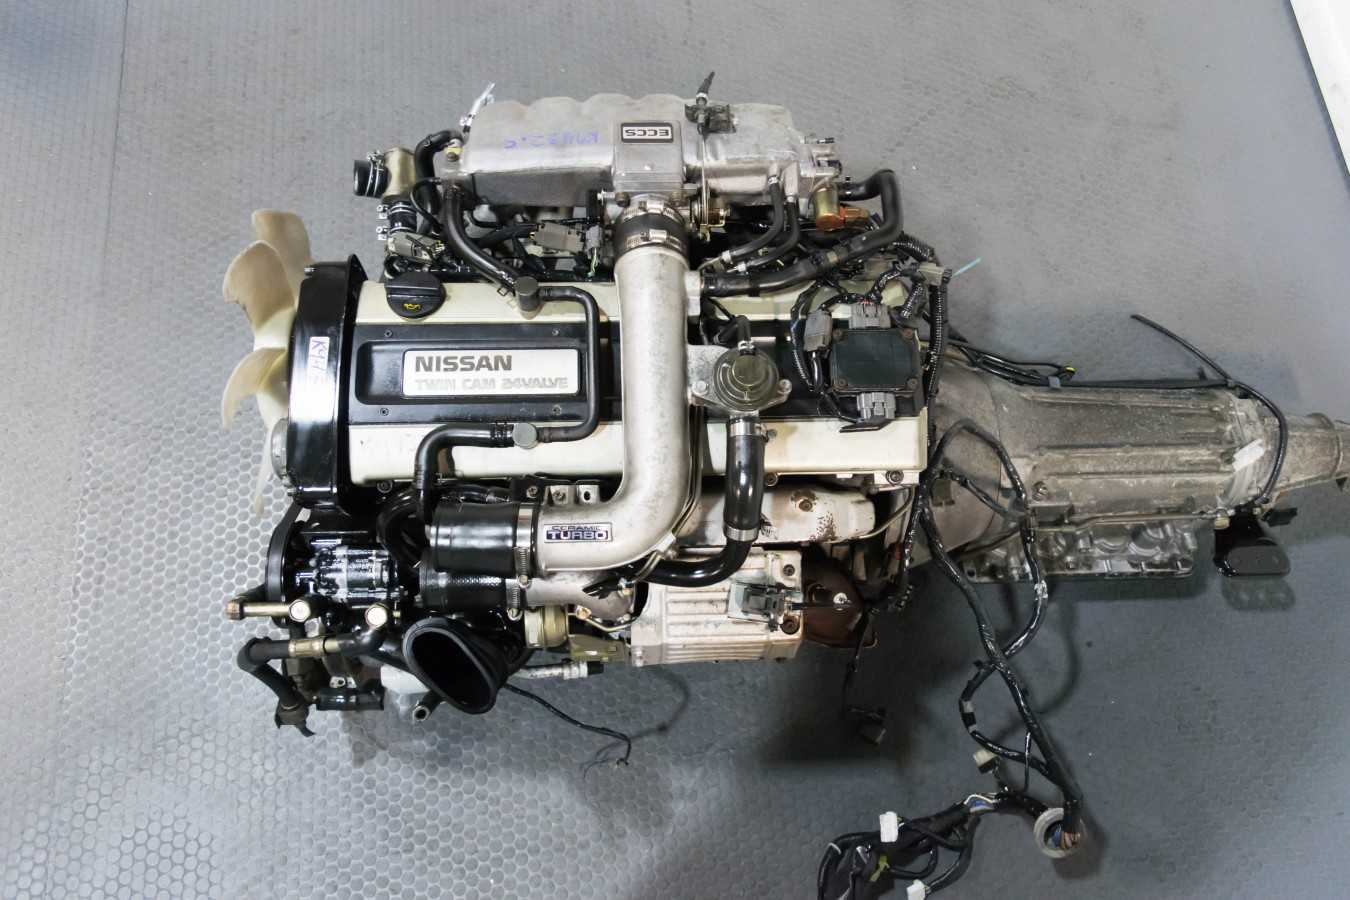 Nissan двигатели rb20e, rb25de, rb25det, rb26dett устройство, техническое обслуживание, ремонт